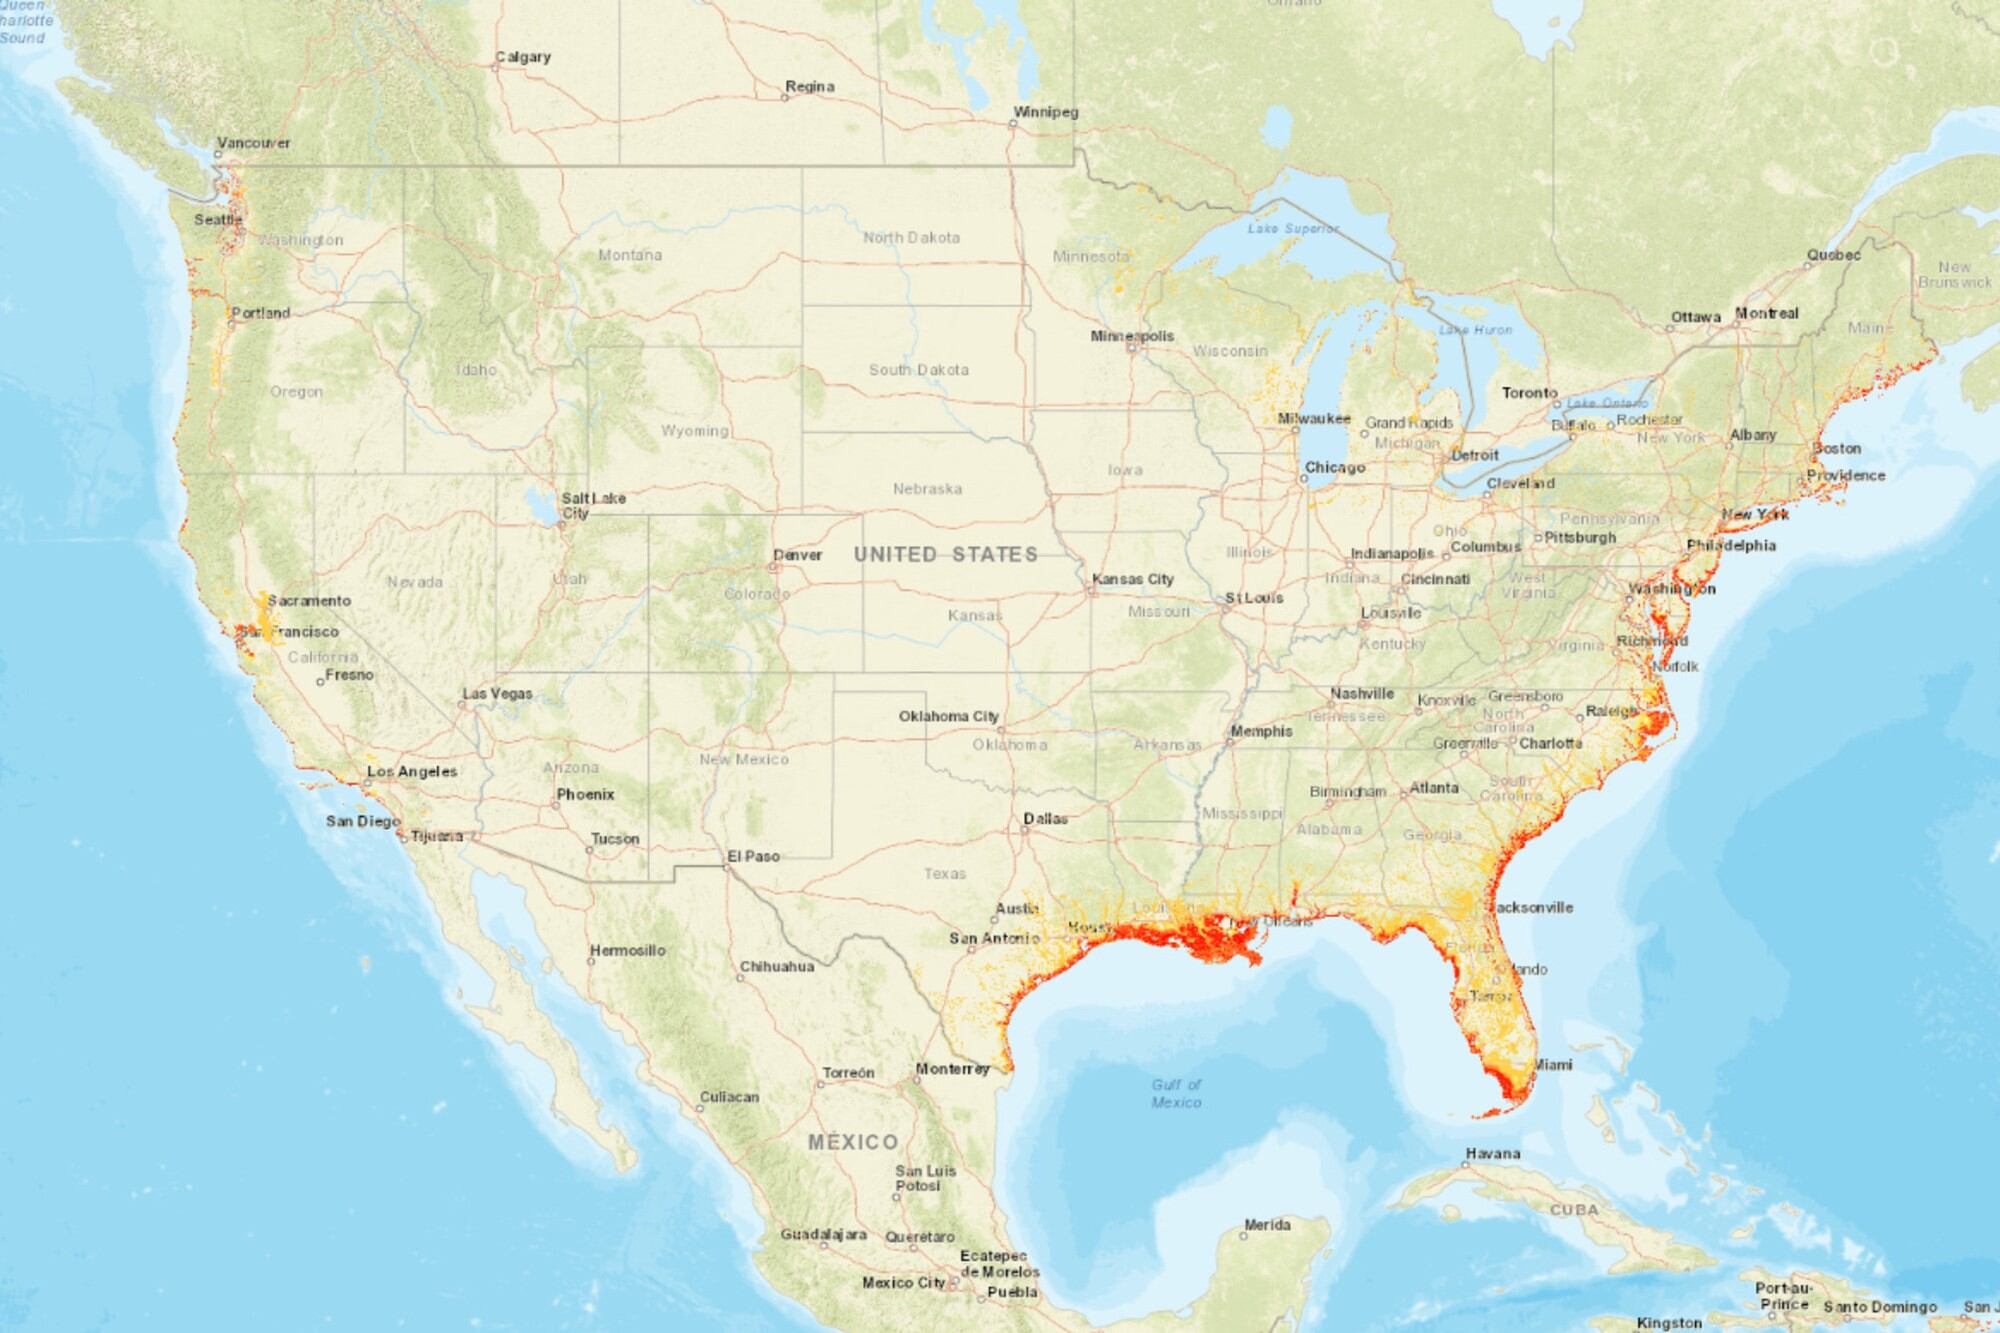 El mapa que muestra las ciudades de EE.UU. con mayor riesgo de inundaciones por el aumento del nivel del mar